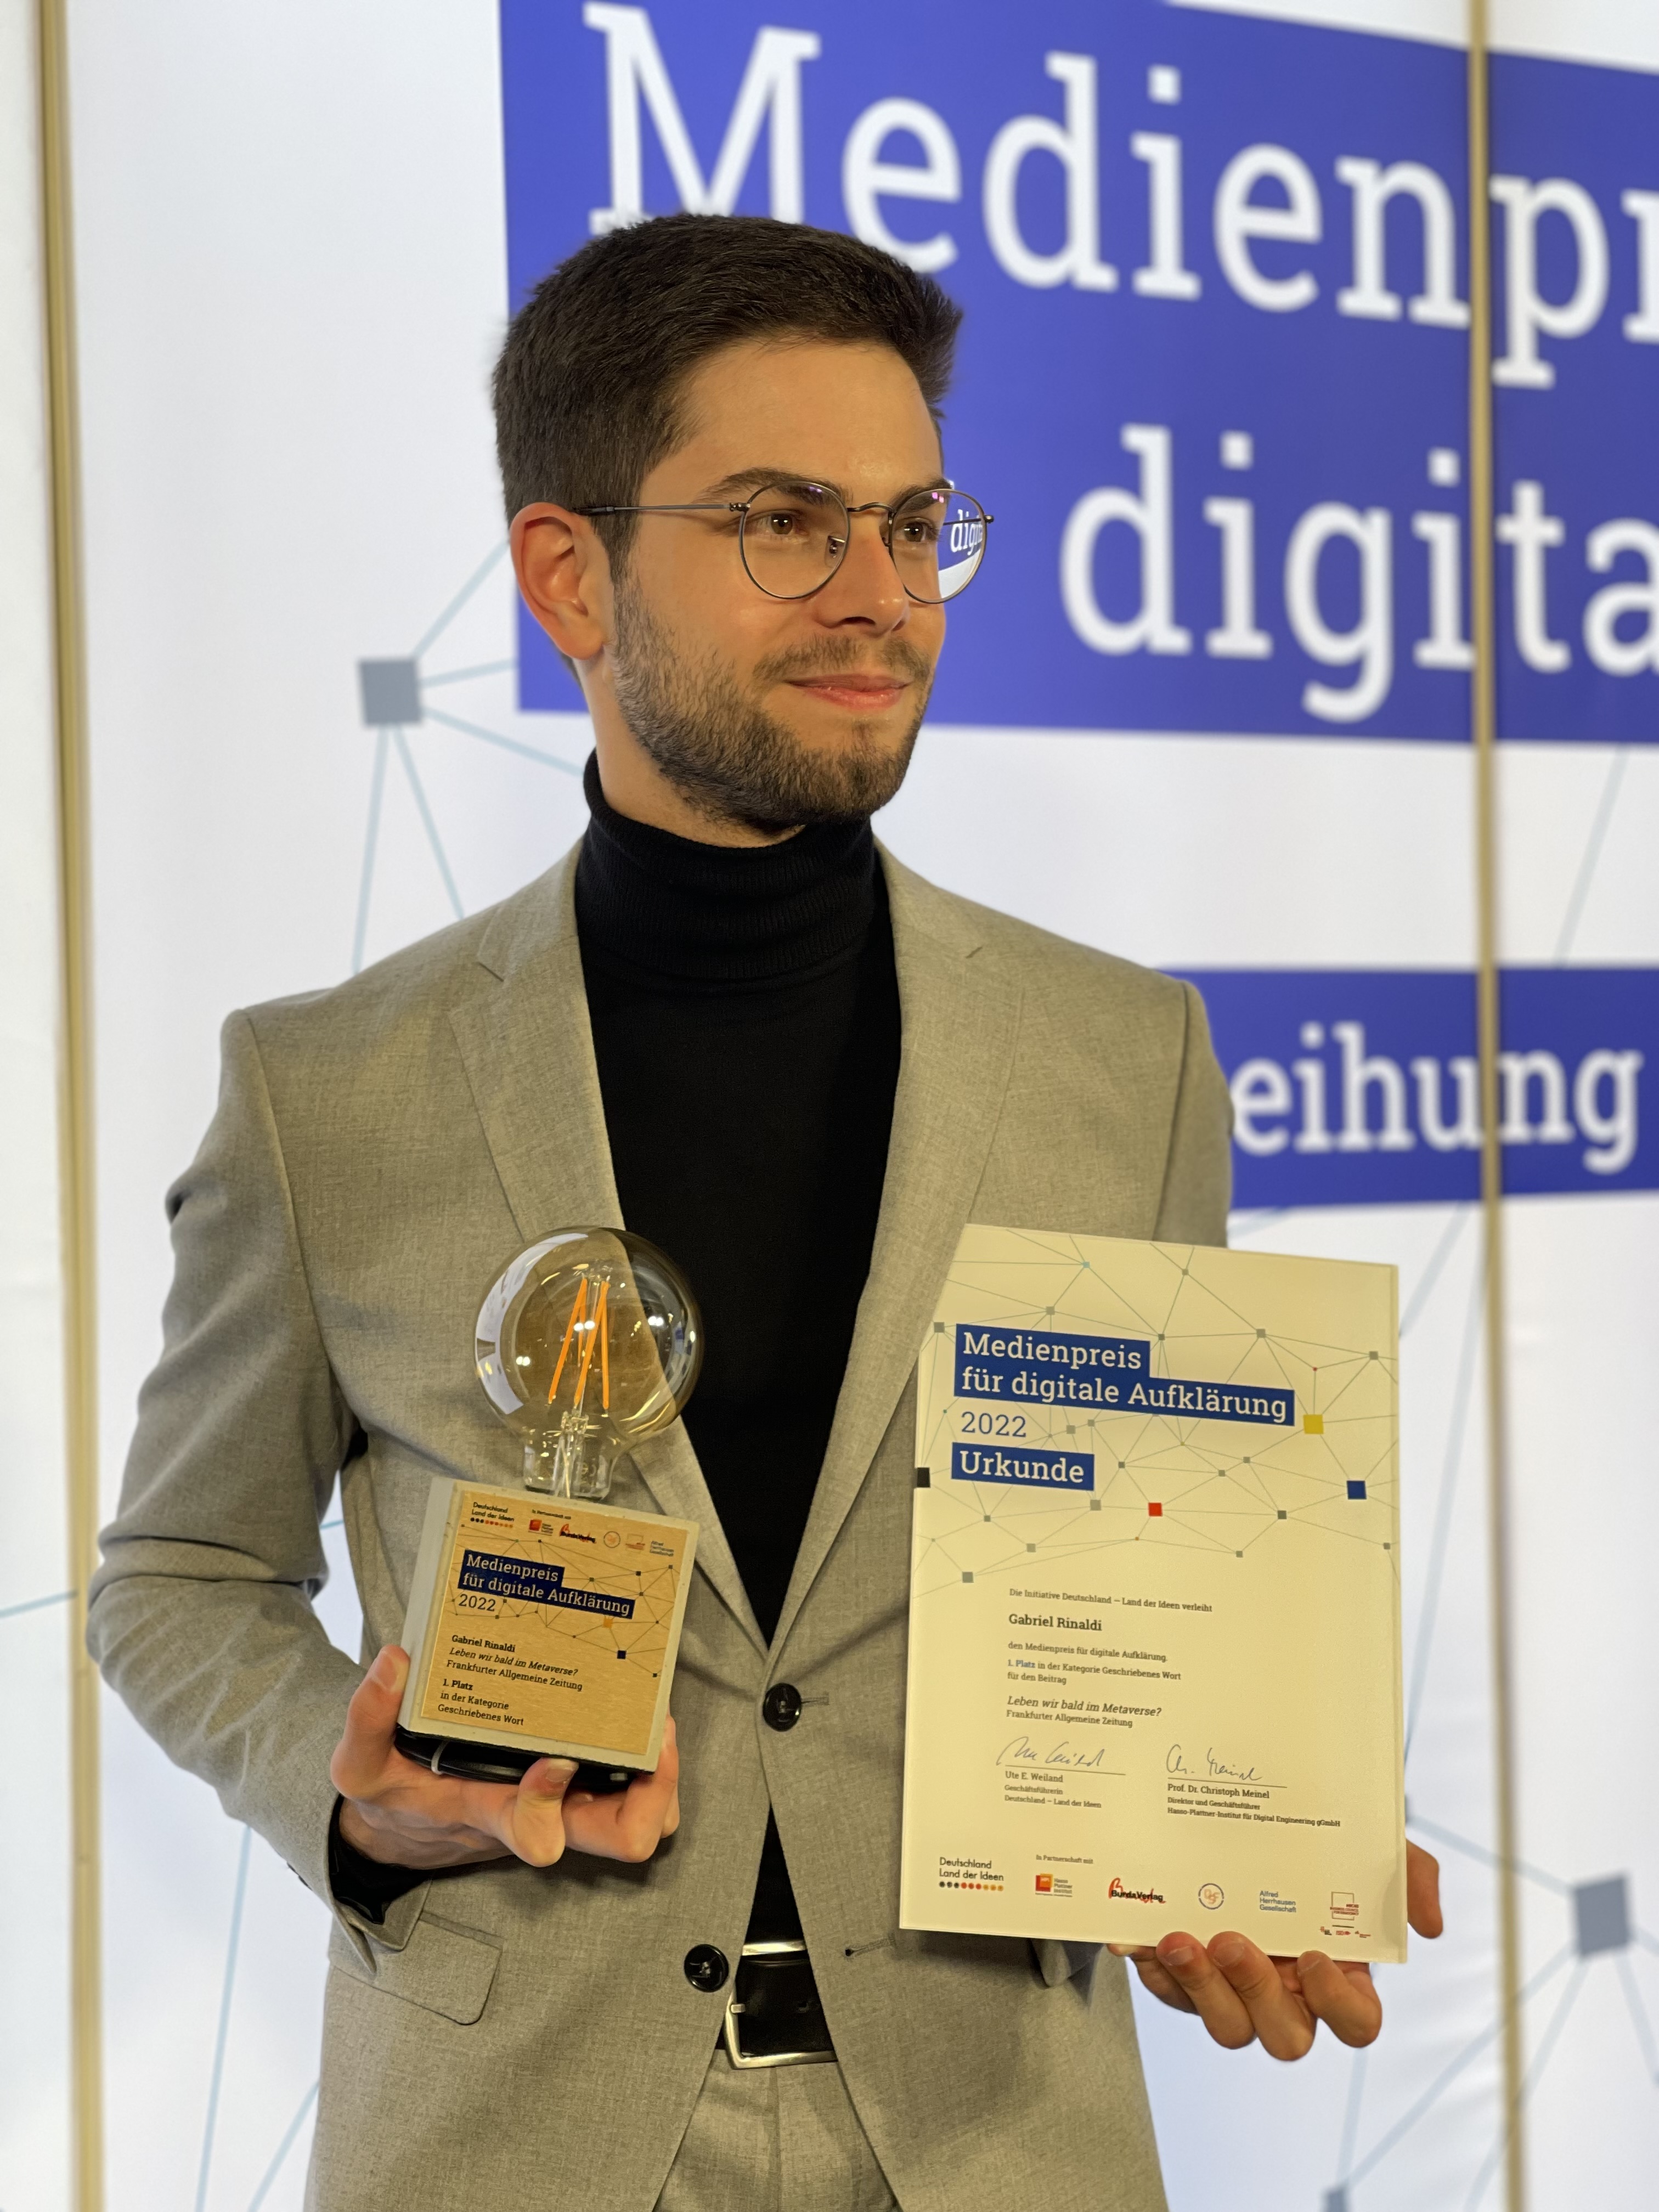 Gabriel Rinaldi erhielt den Medienpreis für digitale Aufklärung 2022 für seinen Artikel über das Metaversum in der Frankfurter Allgemeinen Zeitung, fotografiert von Larena Klöckner.